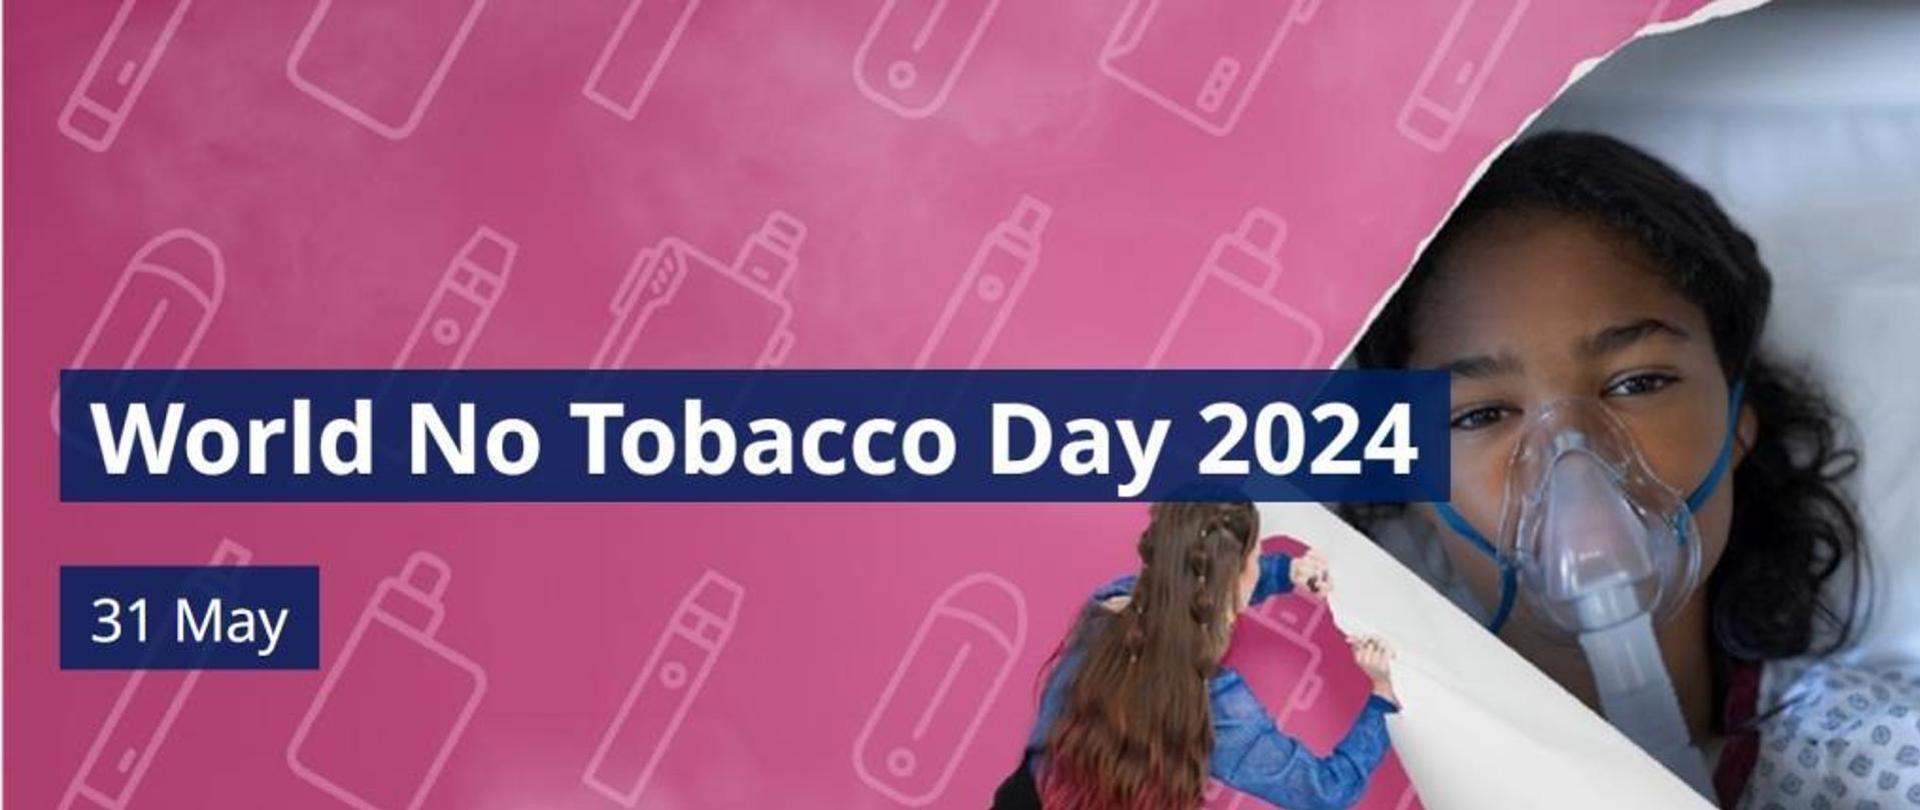 Baner Światowy dzień bez tytoniu